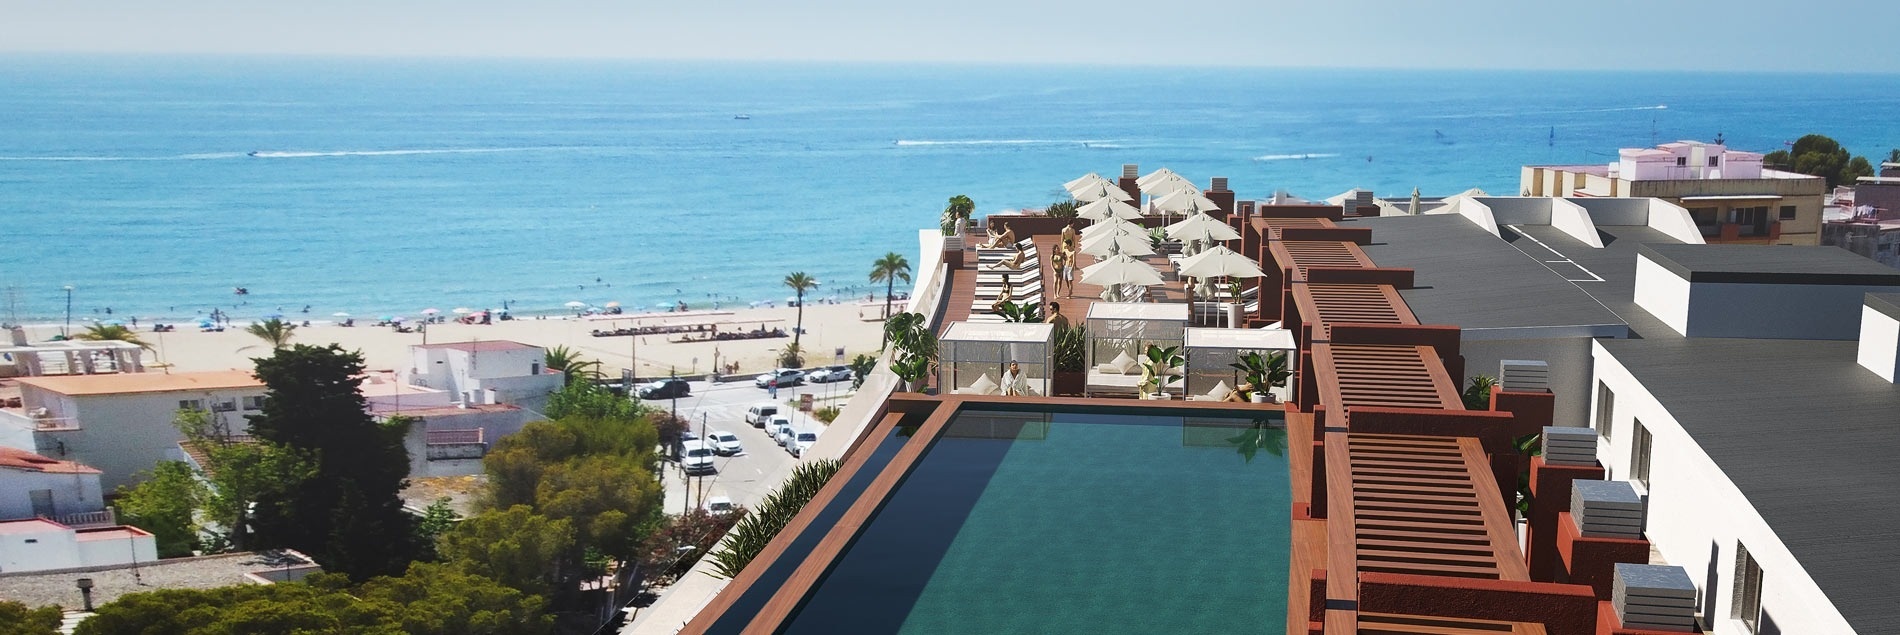 une vue aérienne d' une piscine sur le toit d' un bâtiment avec l' océan en arrière-plan